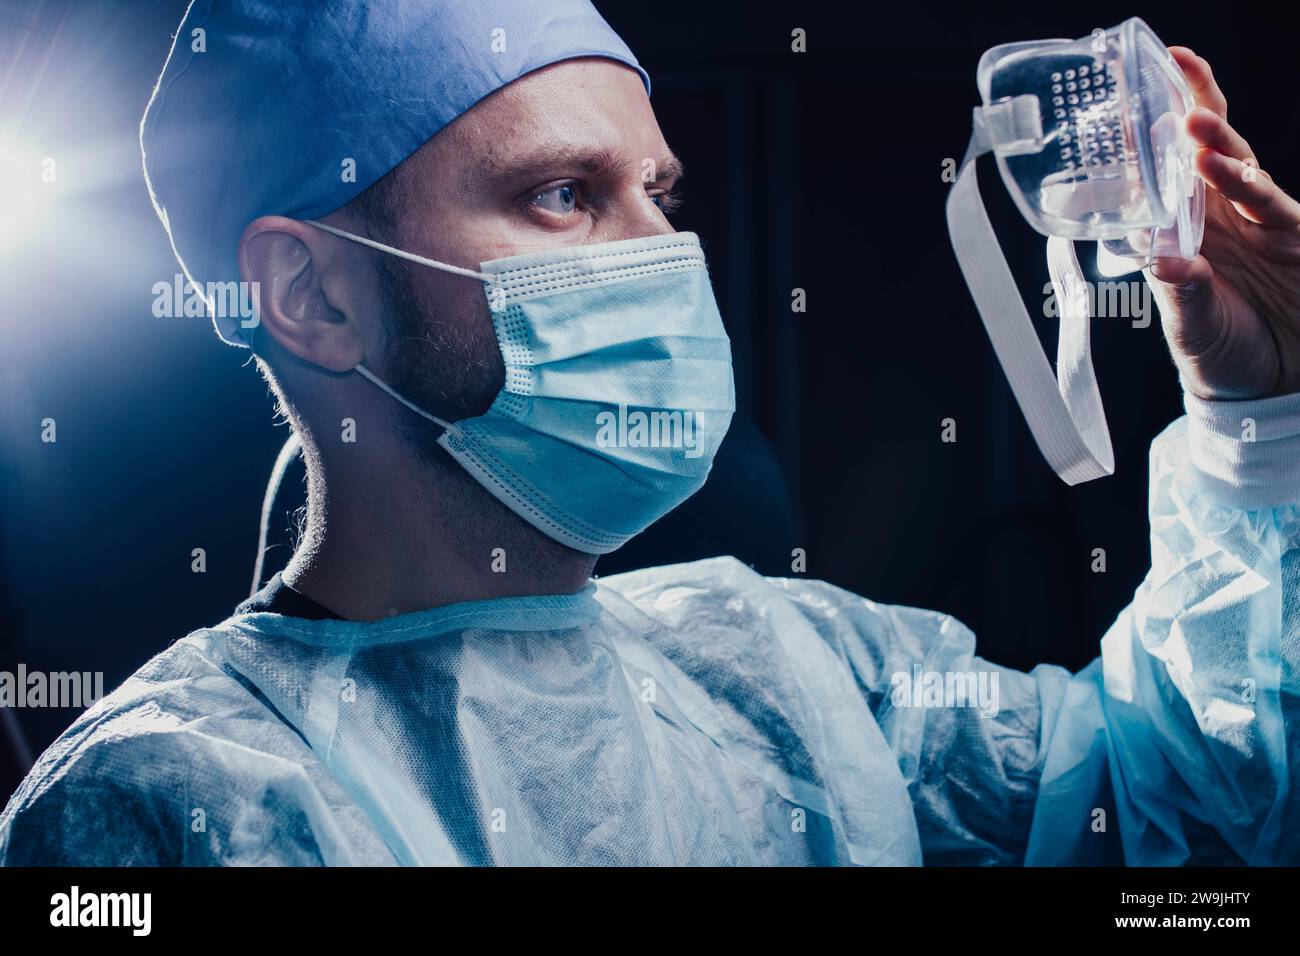 Medizinische Laborassistentin in persönlicher Schutzausrüstung, Einwegmaske, Schutzbrille Stockfoto